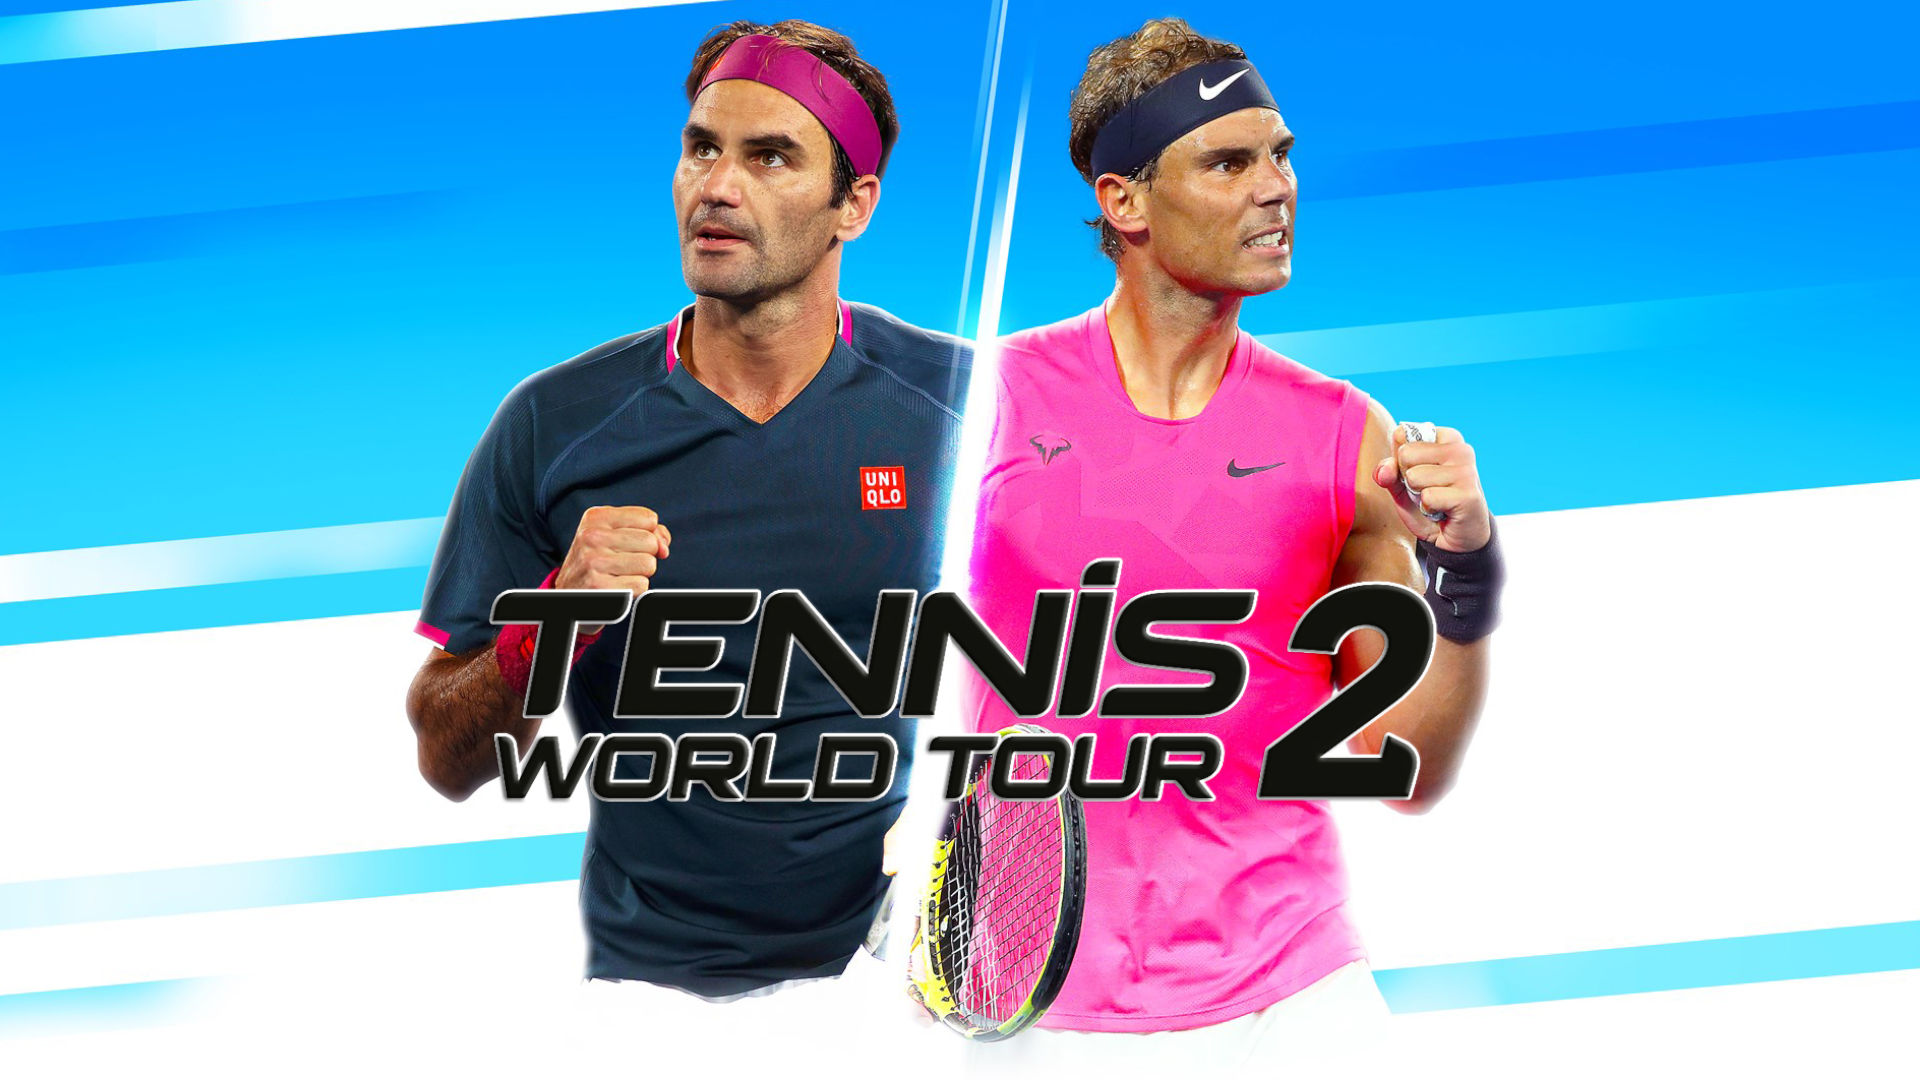 Cover-Artwork für Tennis World Tour 2, eines der realistischeren Tennisspiele